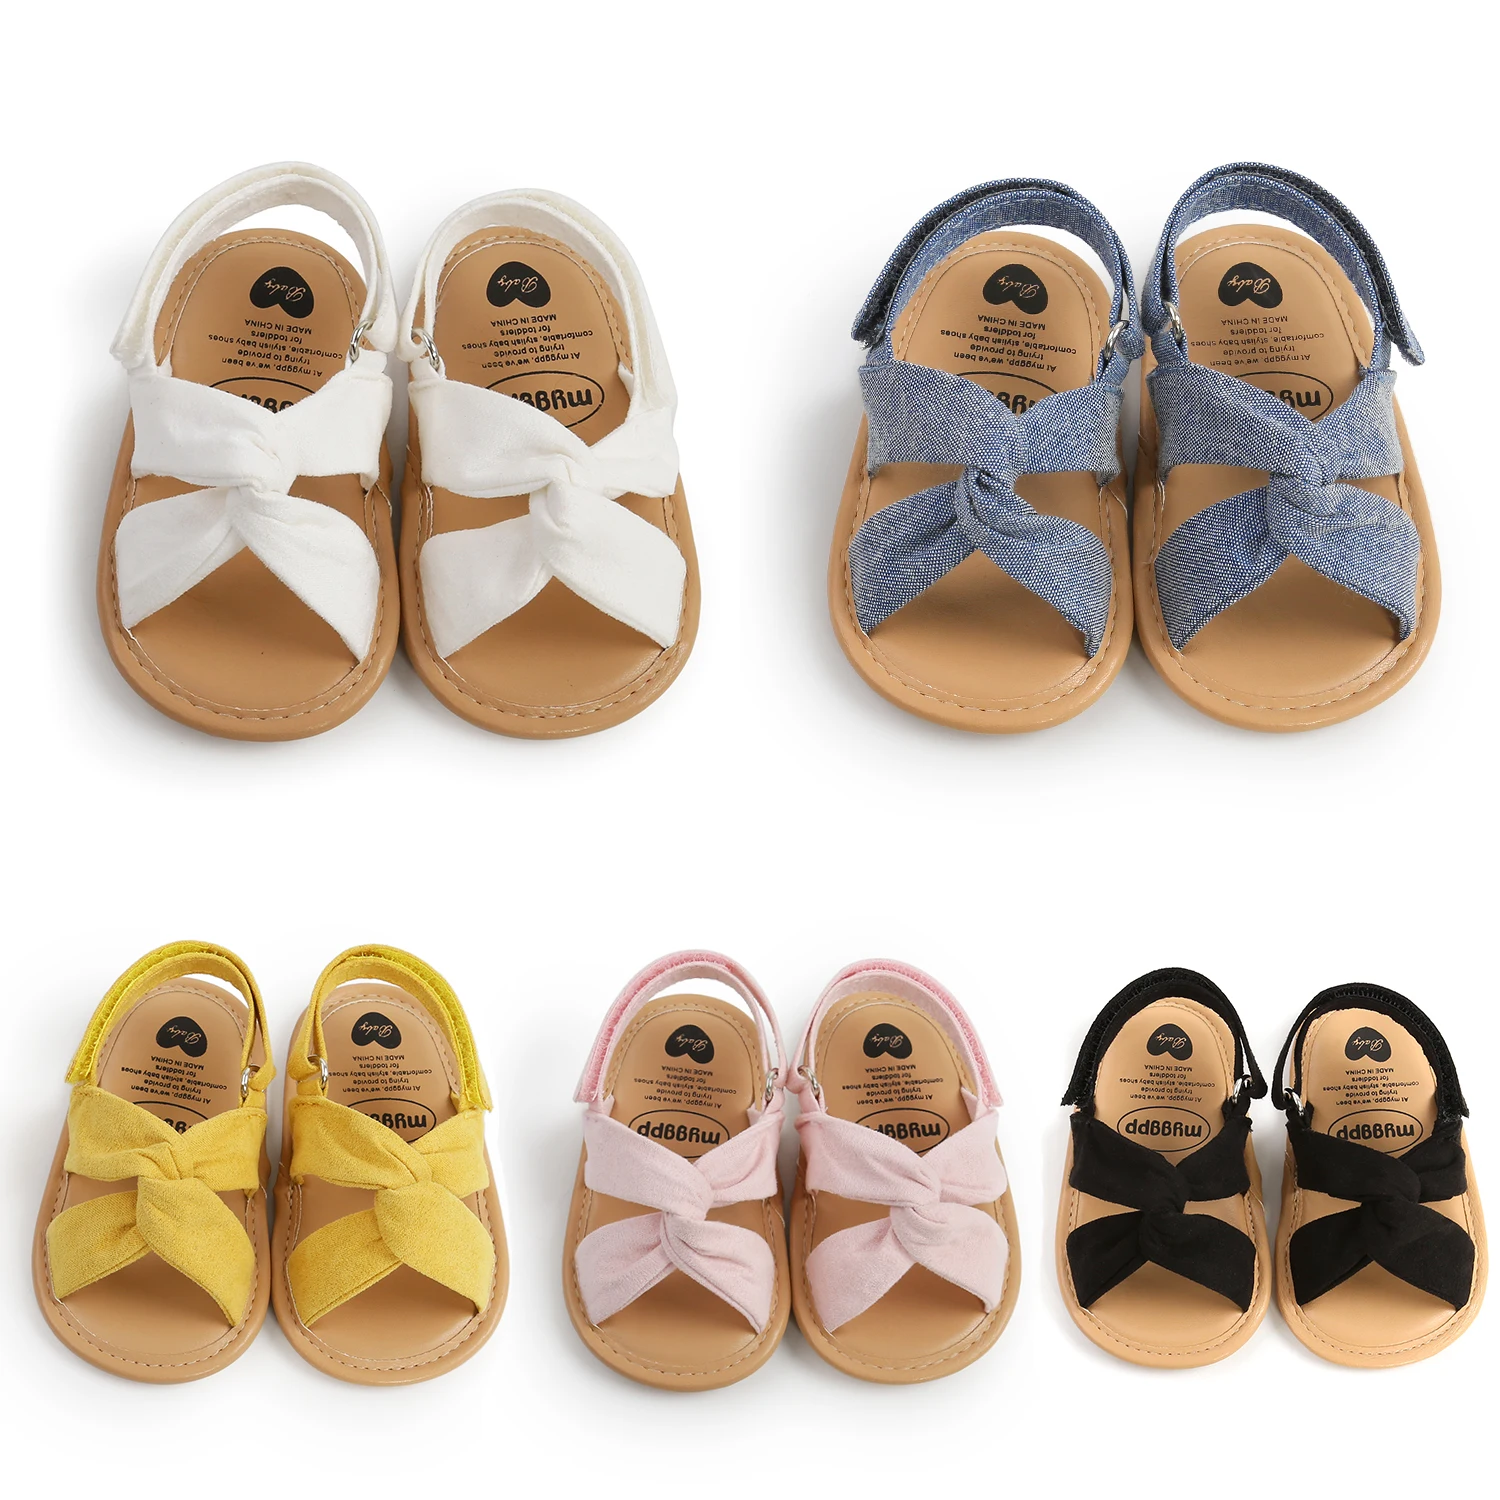 

Сандалии для девочек 0-18 месяцев, мягкая резиновая подошва, Нескользящие, летняя обувь для первых шагов